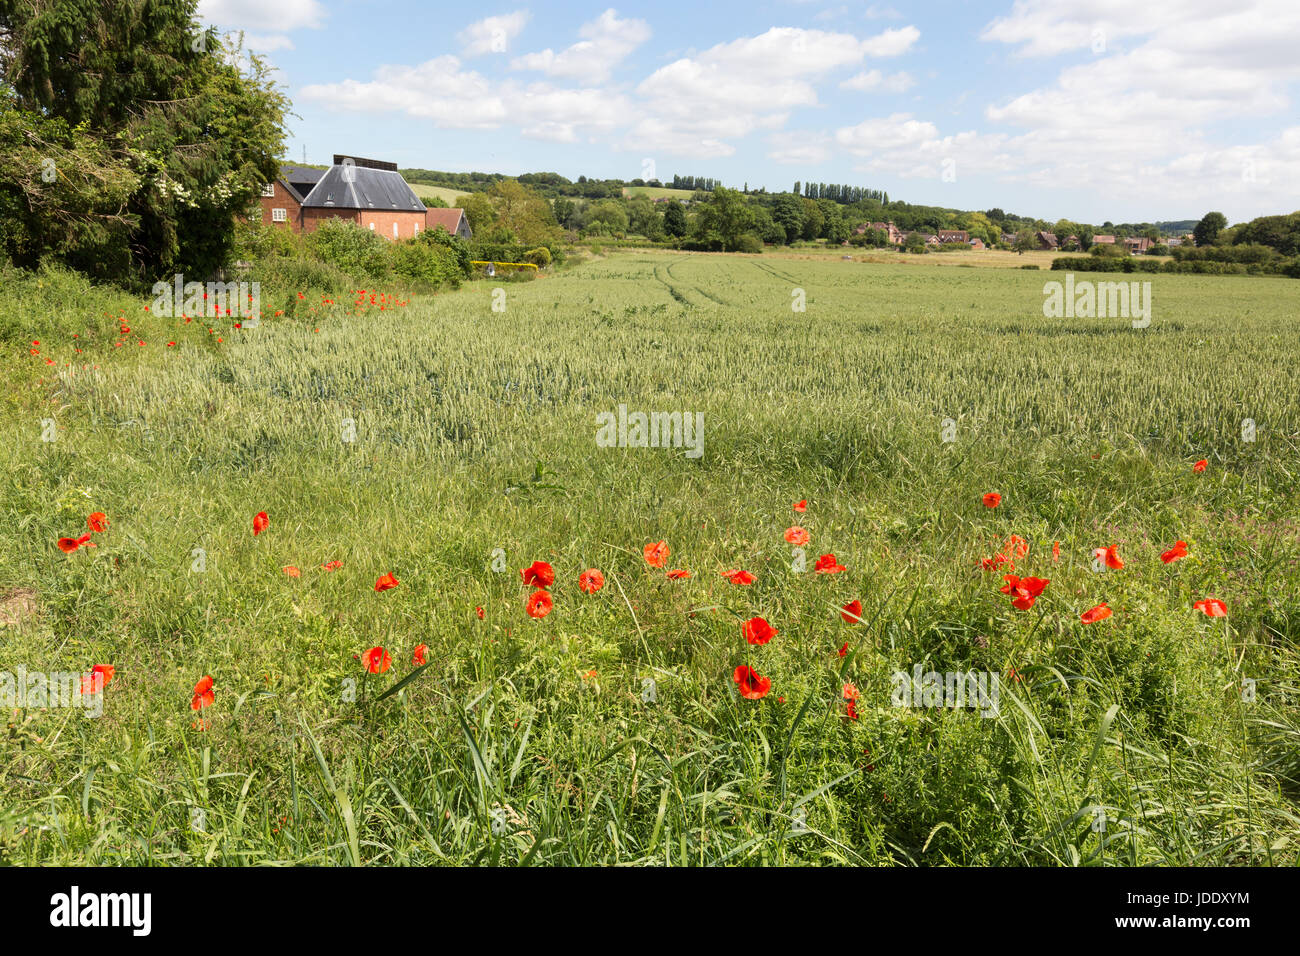 Britische Landschaft im Sommer - Stour Valley Landschaften, Mohnblumen auf einem Feld bei Chartham, Stour Valley, Kent England Großbritannien Stockfoto